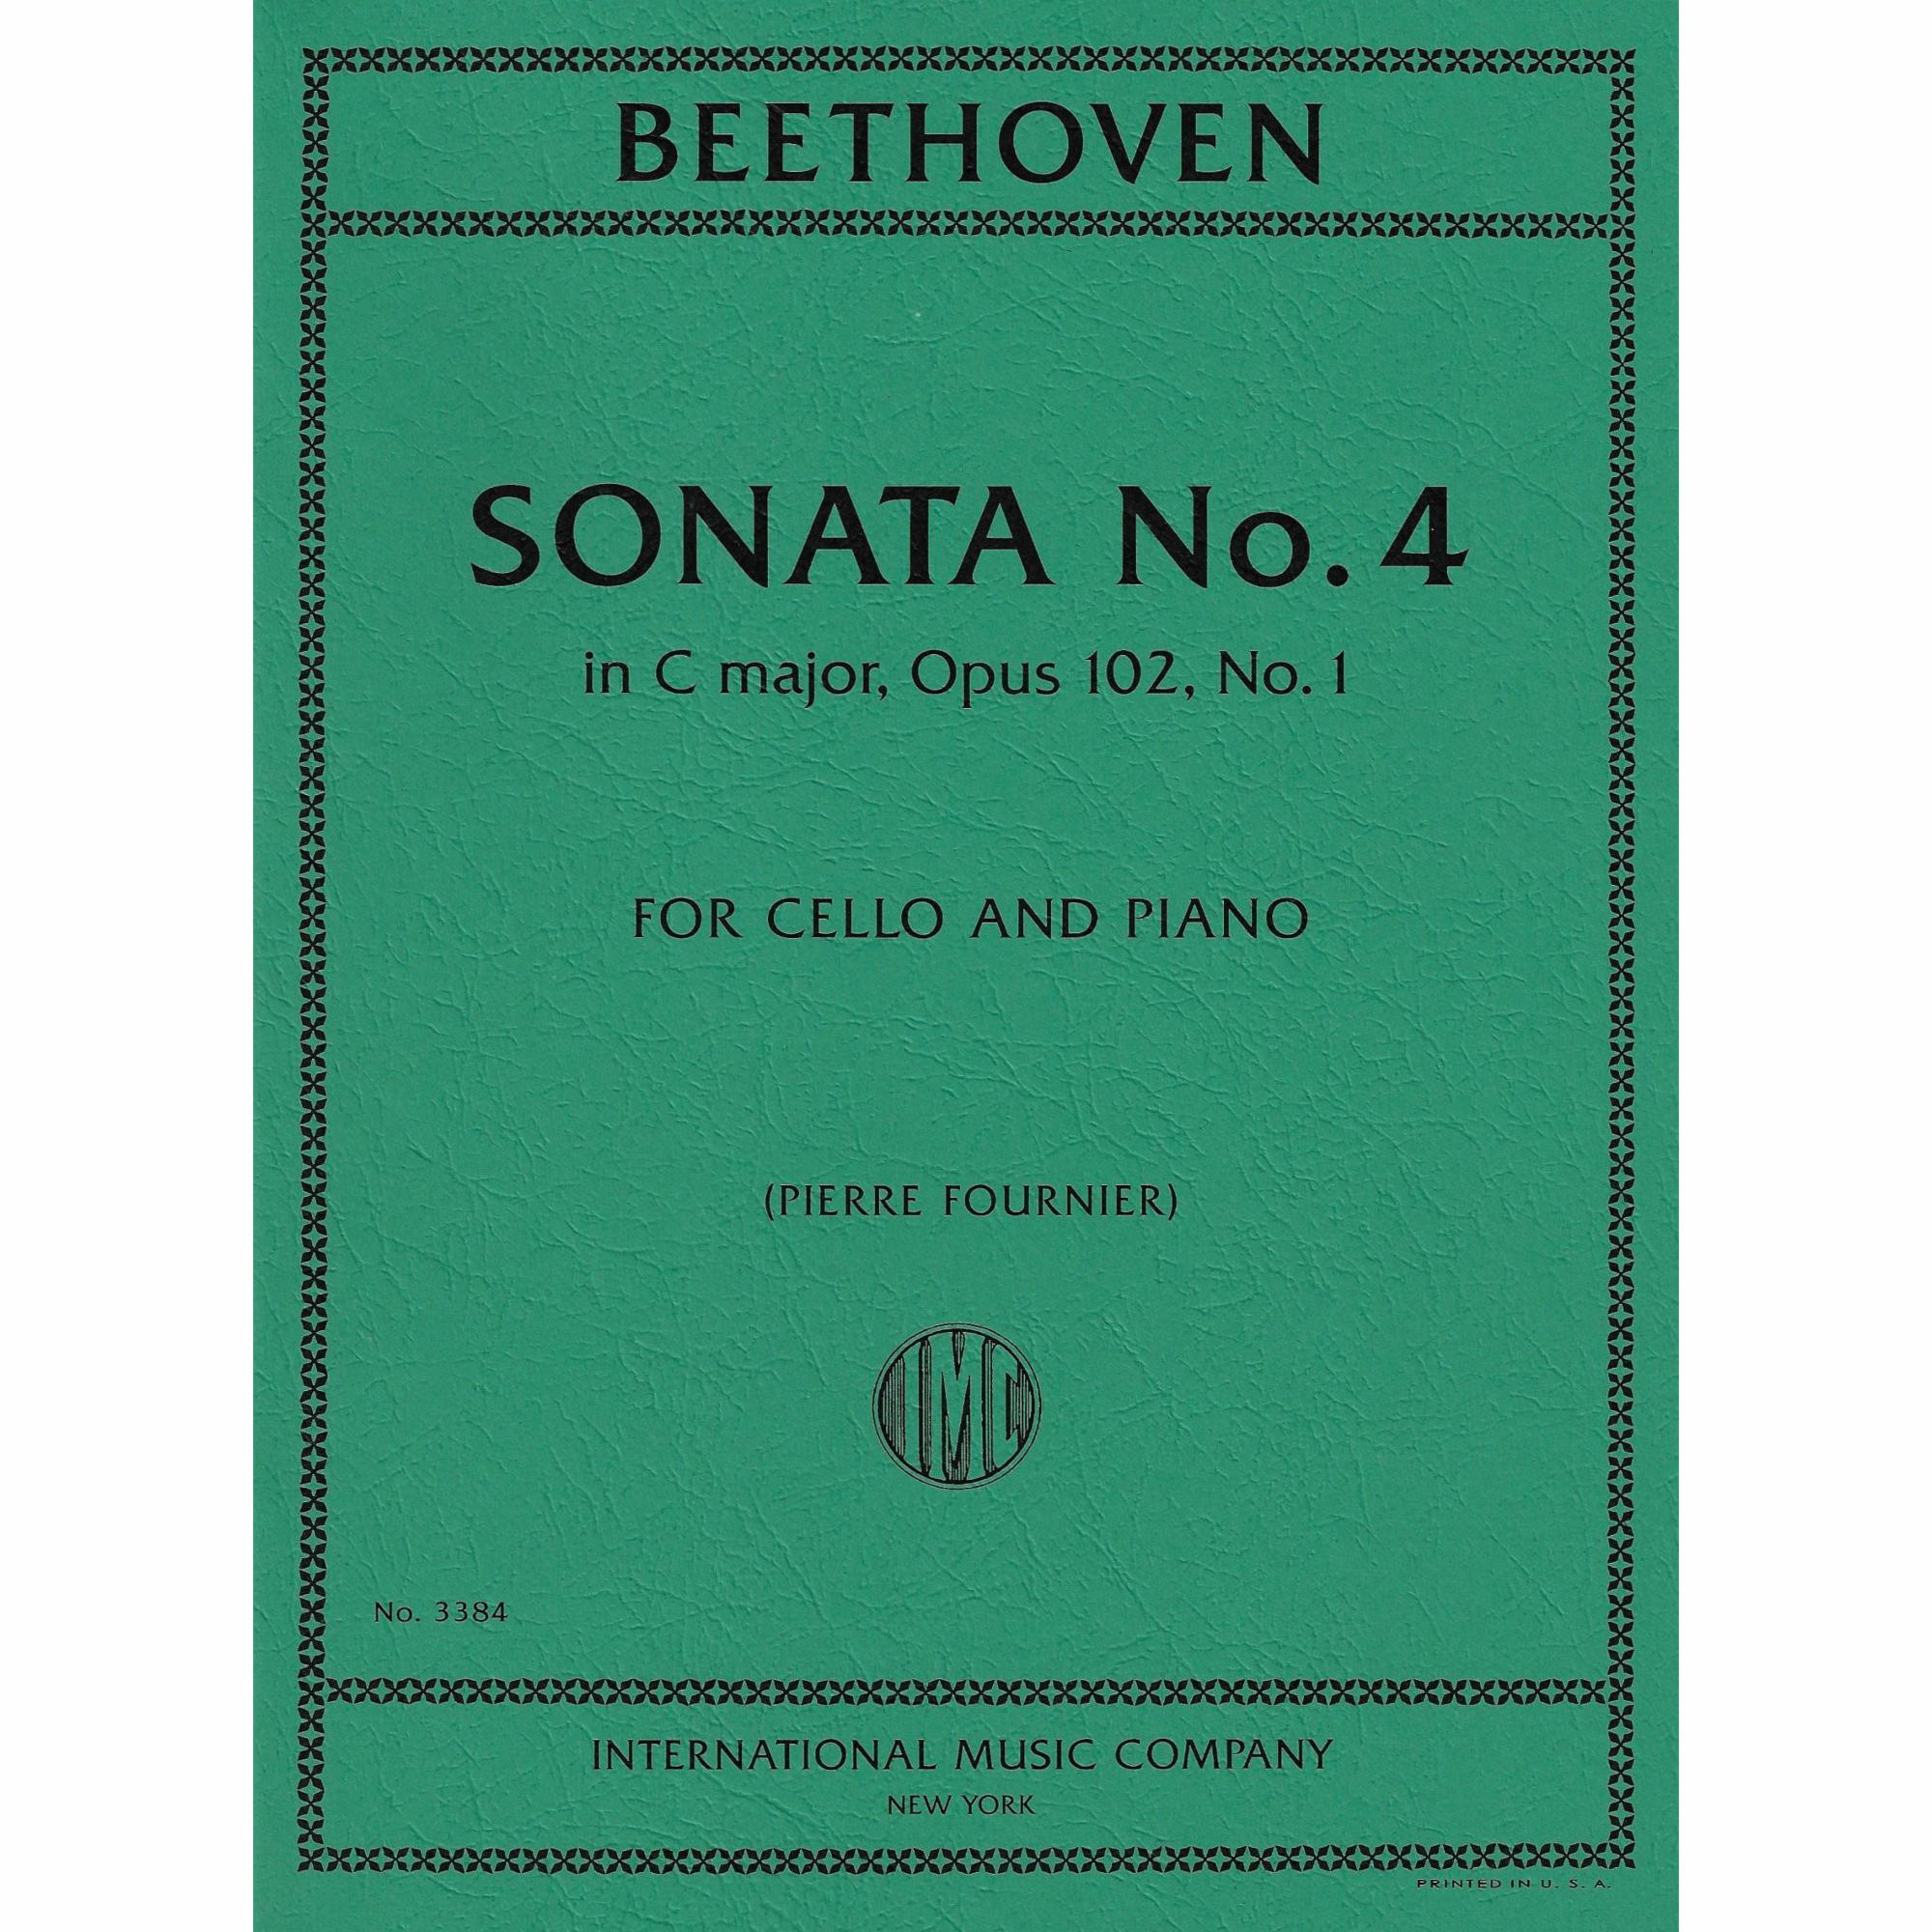 Cello Sonata No. 4 in C Major, Op. 102, No. 1